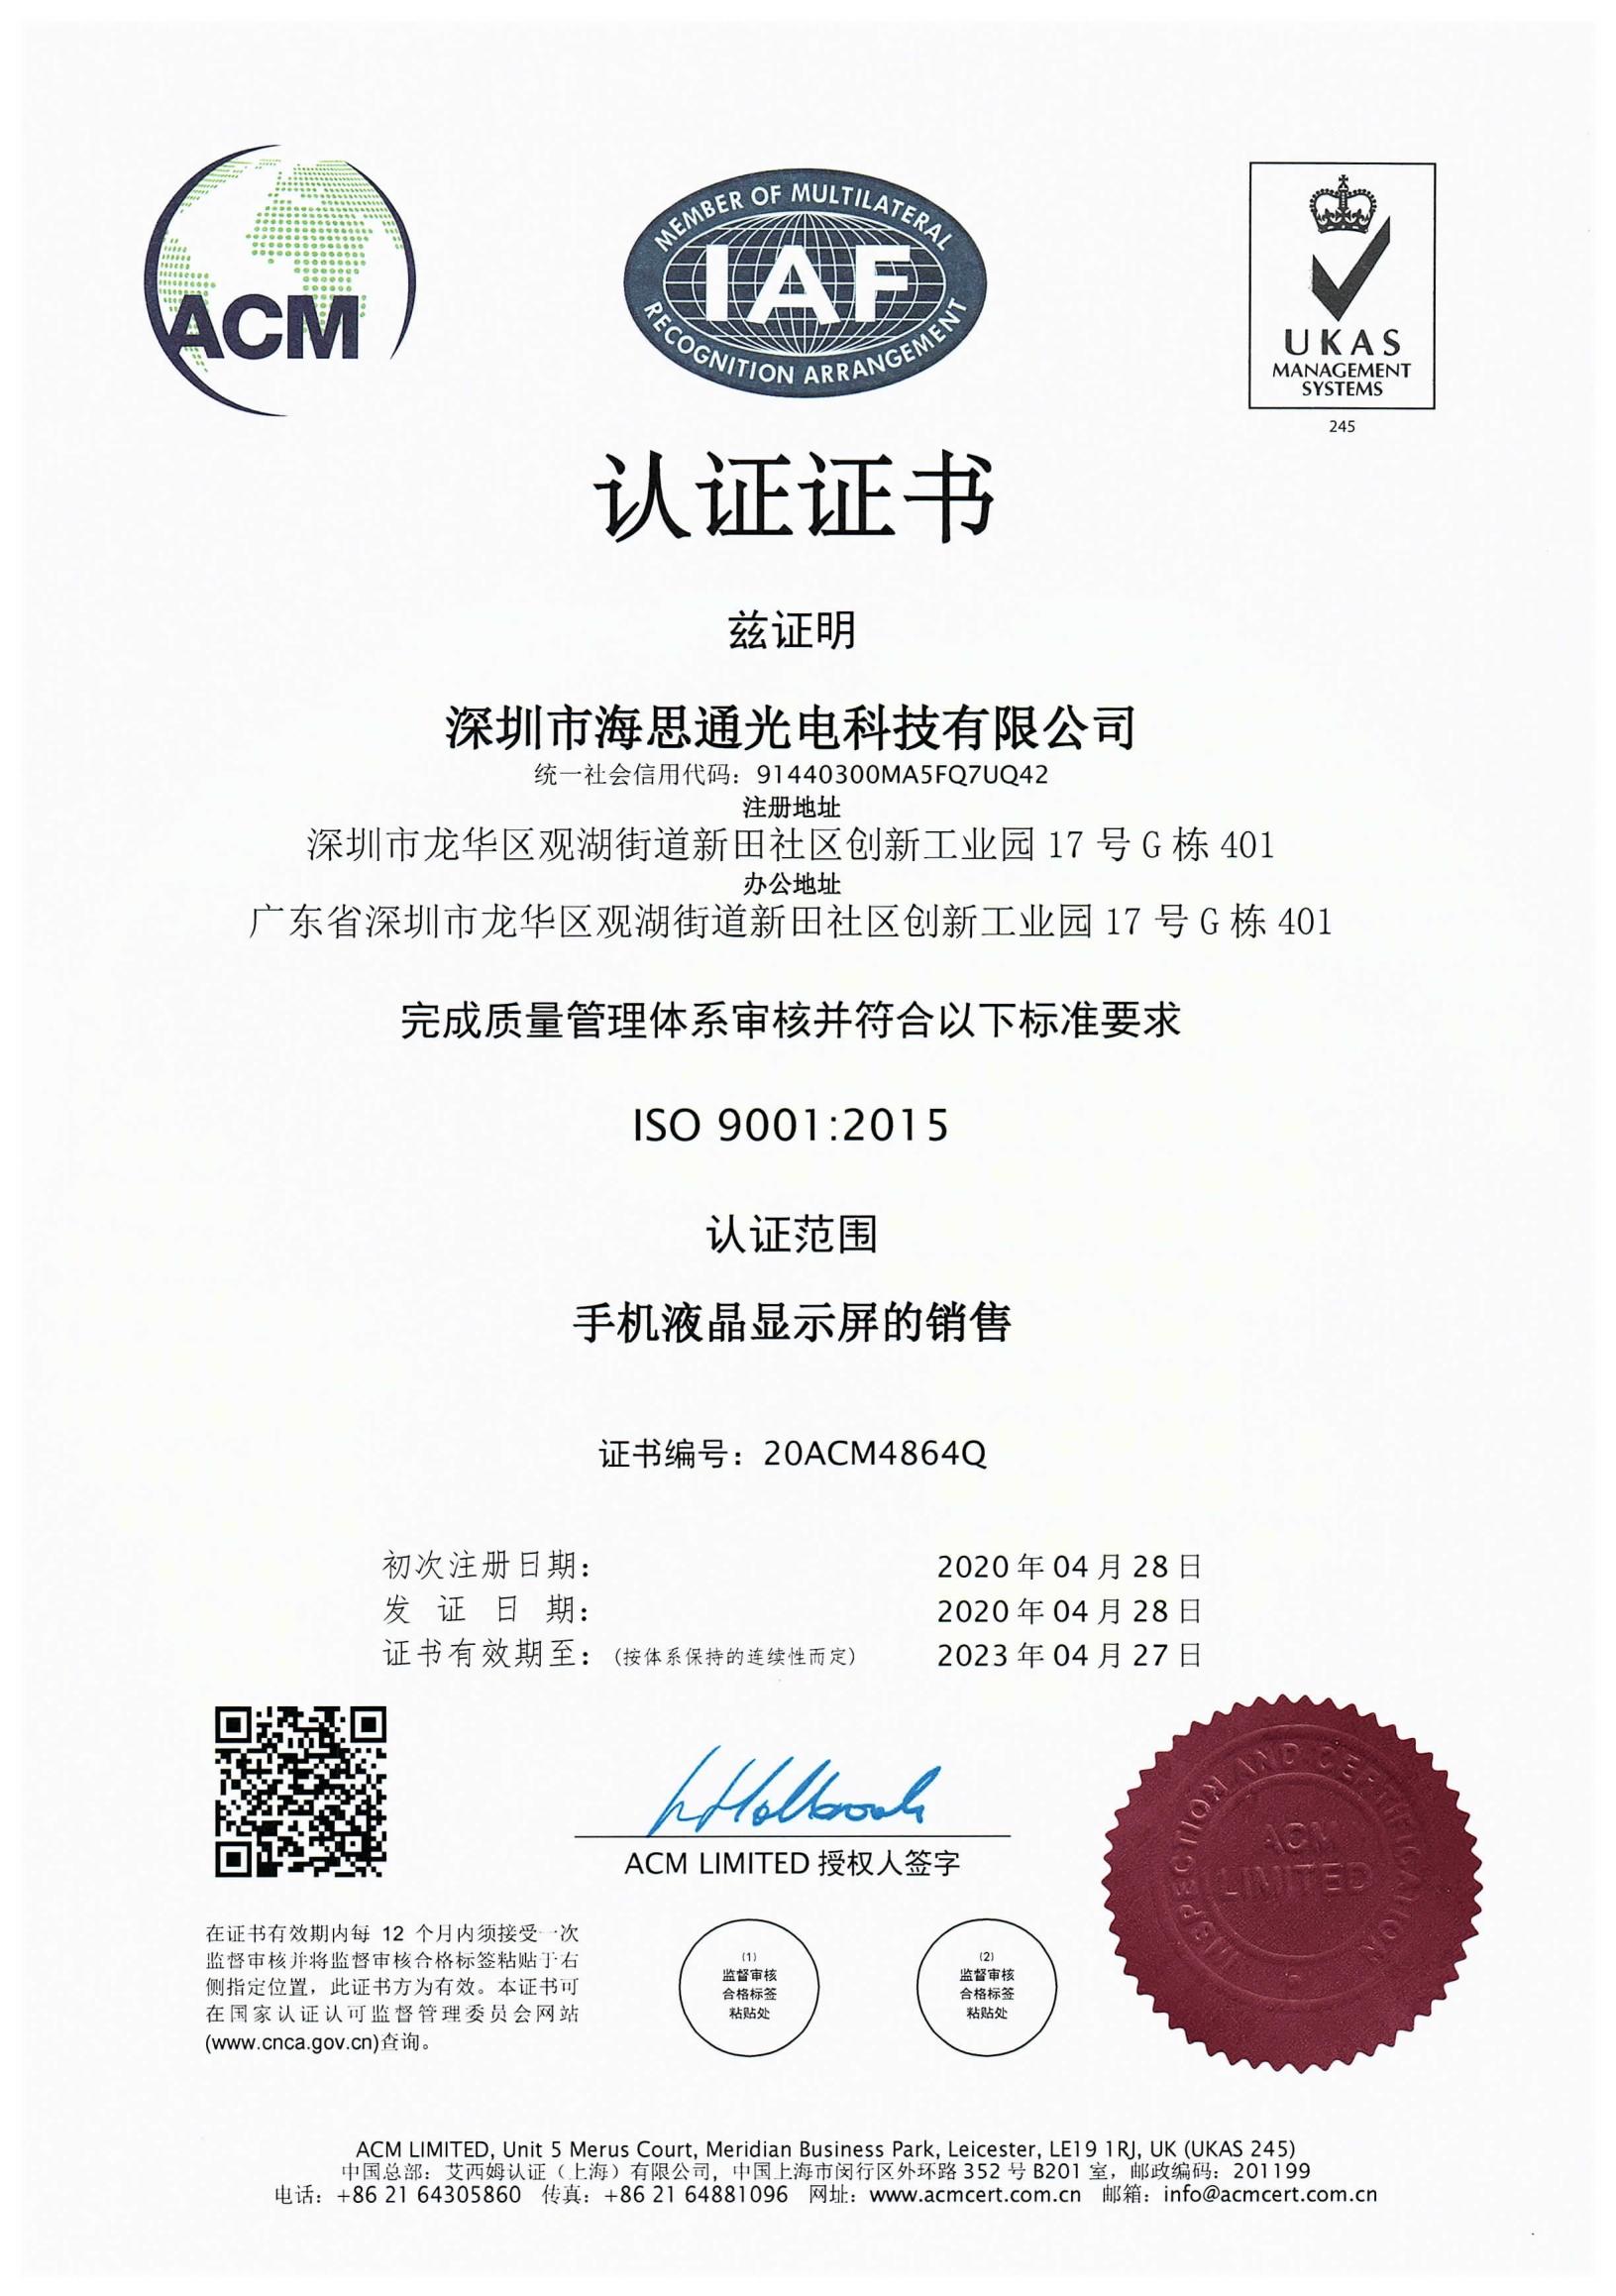 海思通手机液晶显示屏ISO 90012015认证证书